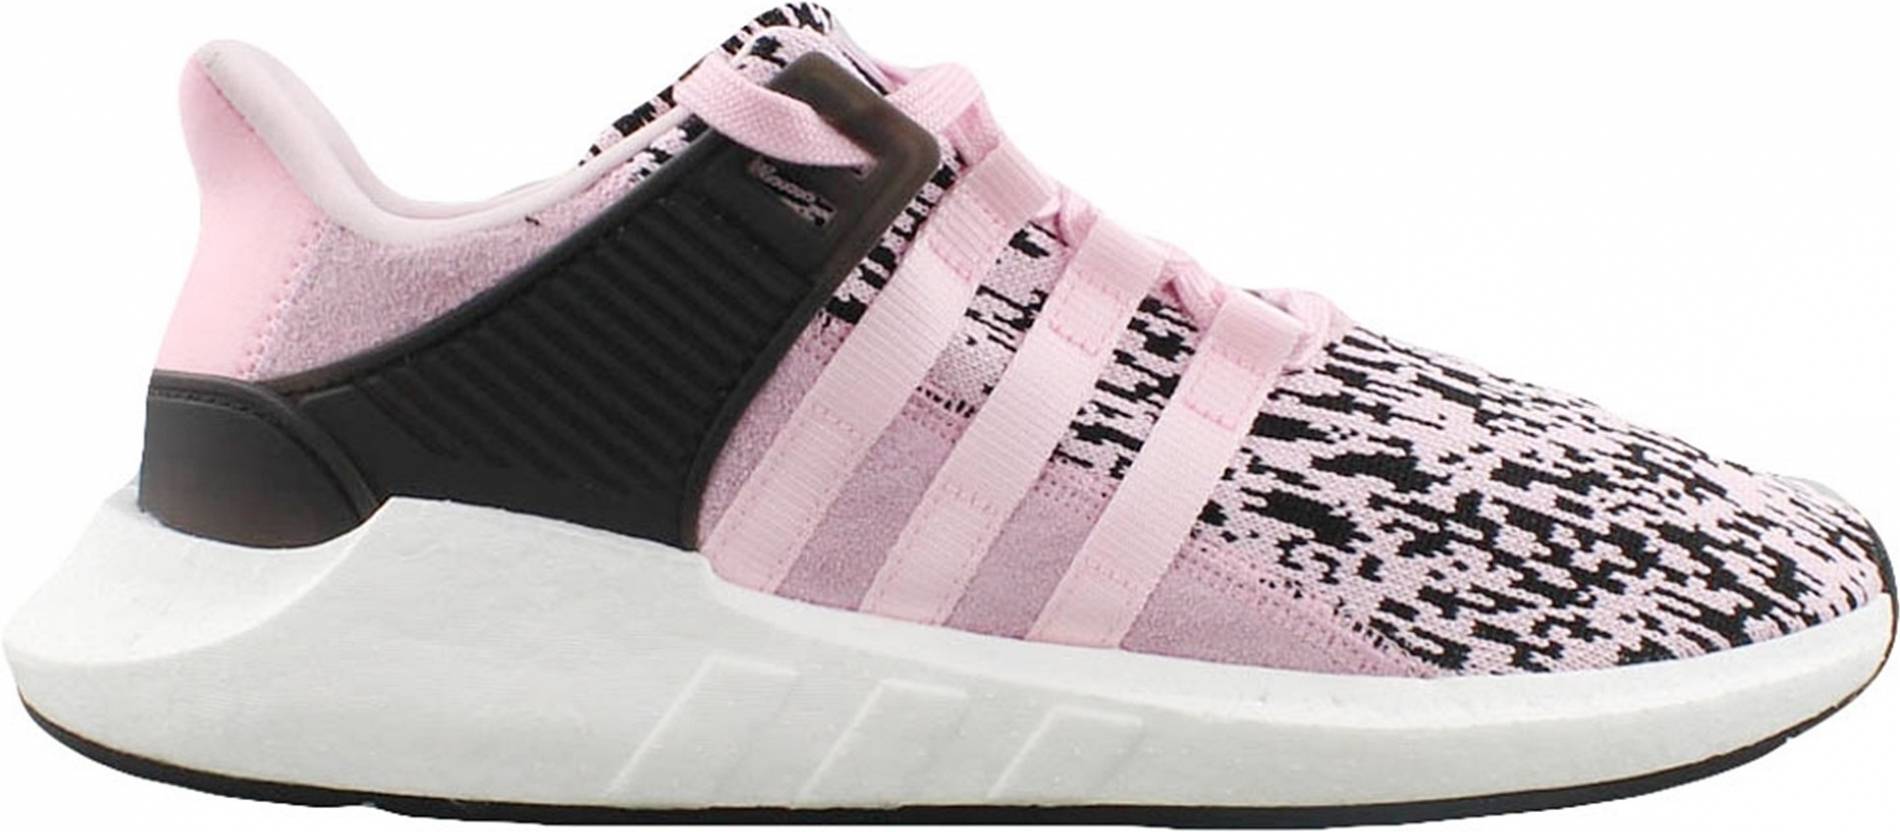 adidas mens shoes pink